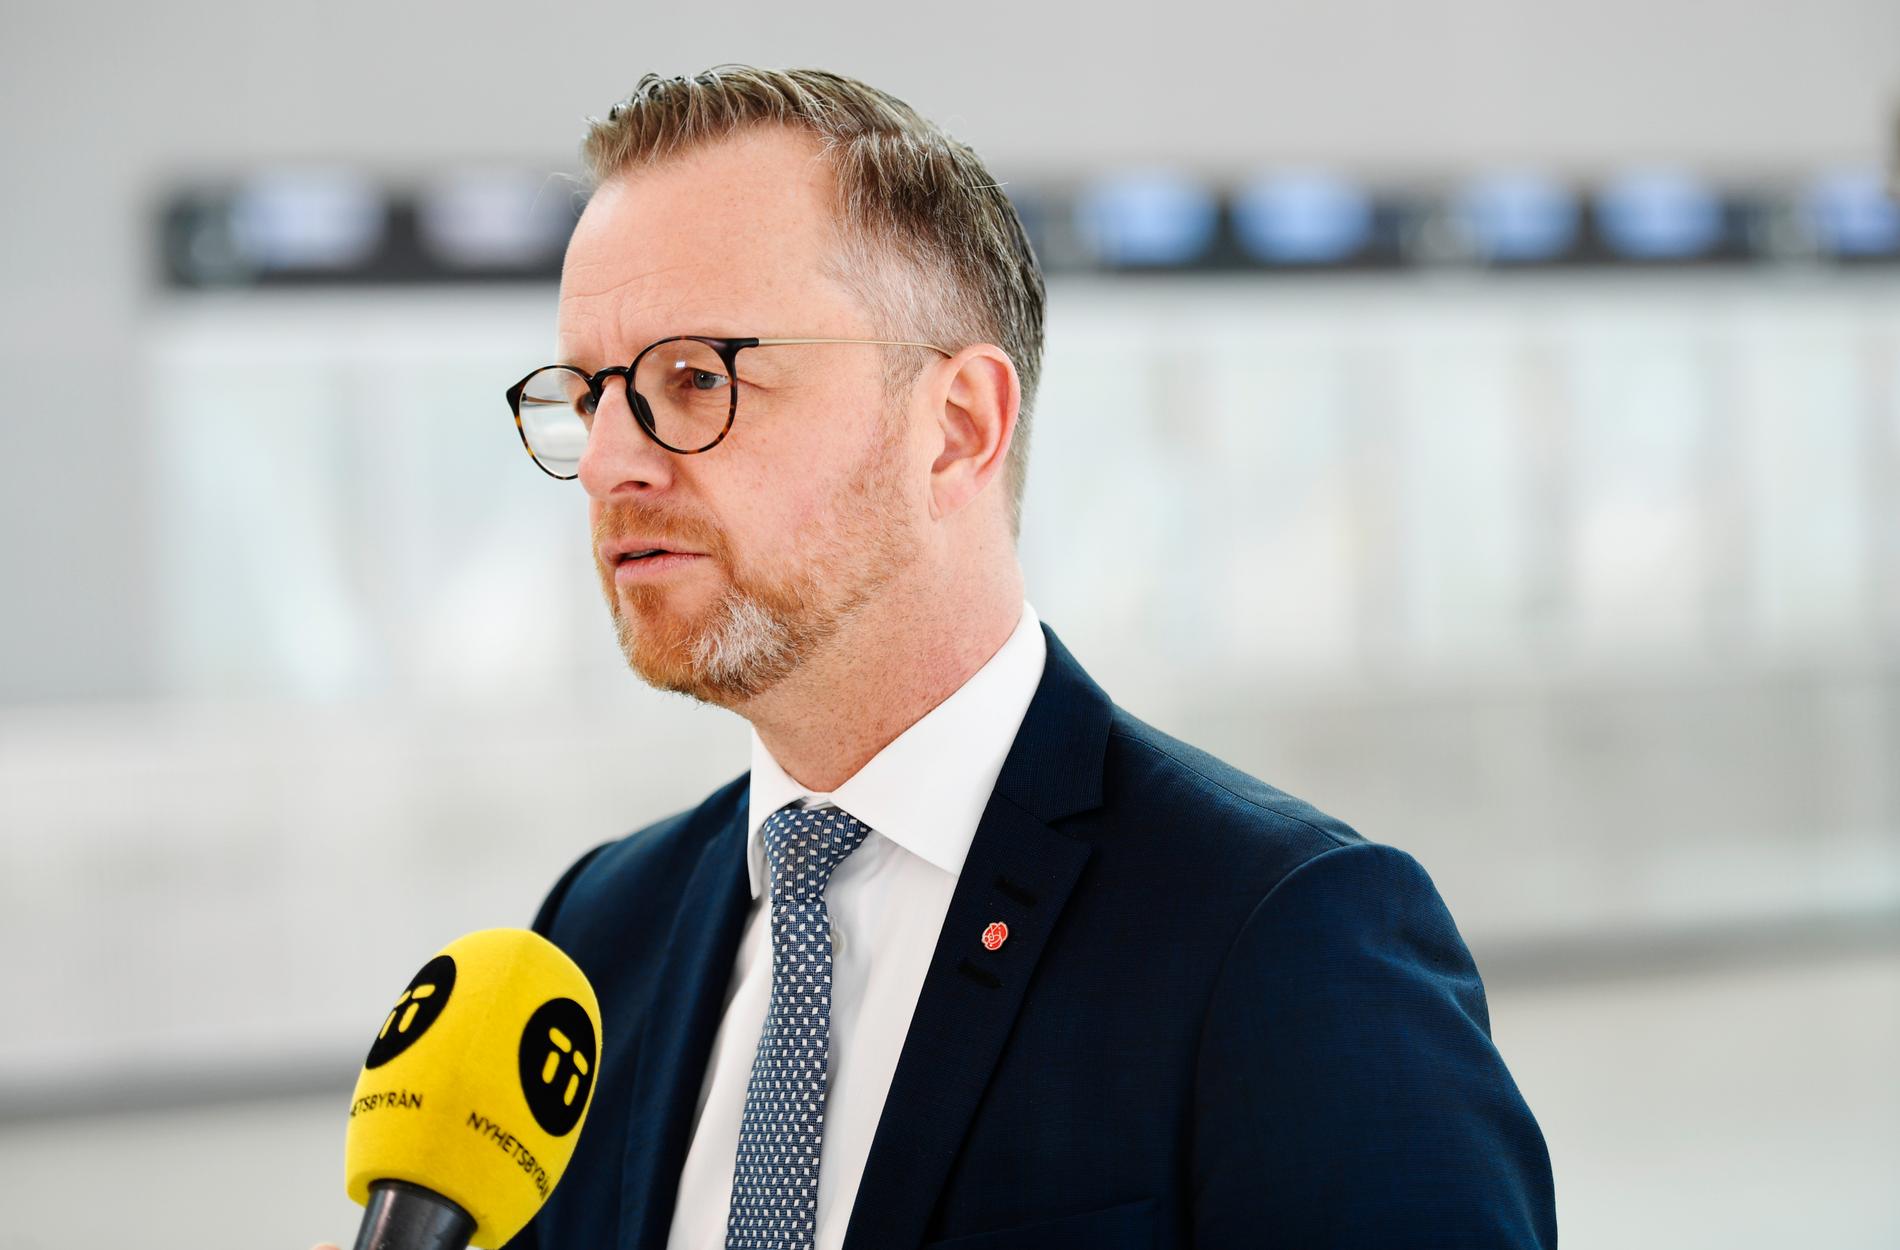 "Alla myndigheter går igenom det och ser till att man prioriterar det som är viktigast. Det förutsätter man att alla myndigheter gör i Sverige i dag", säger inrikesministern Mikael Damberg, för dagen på besök i Bryssel.